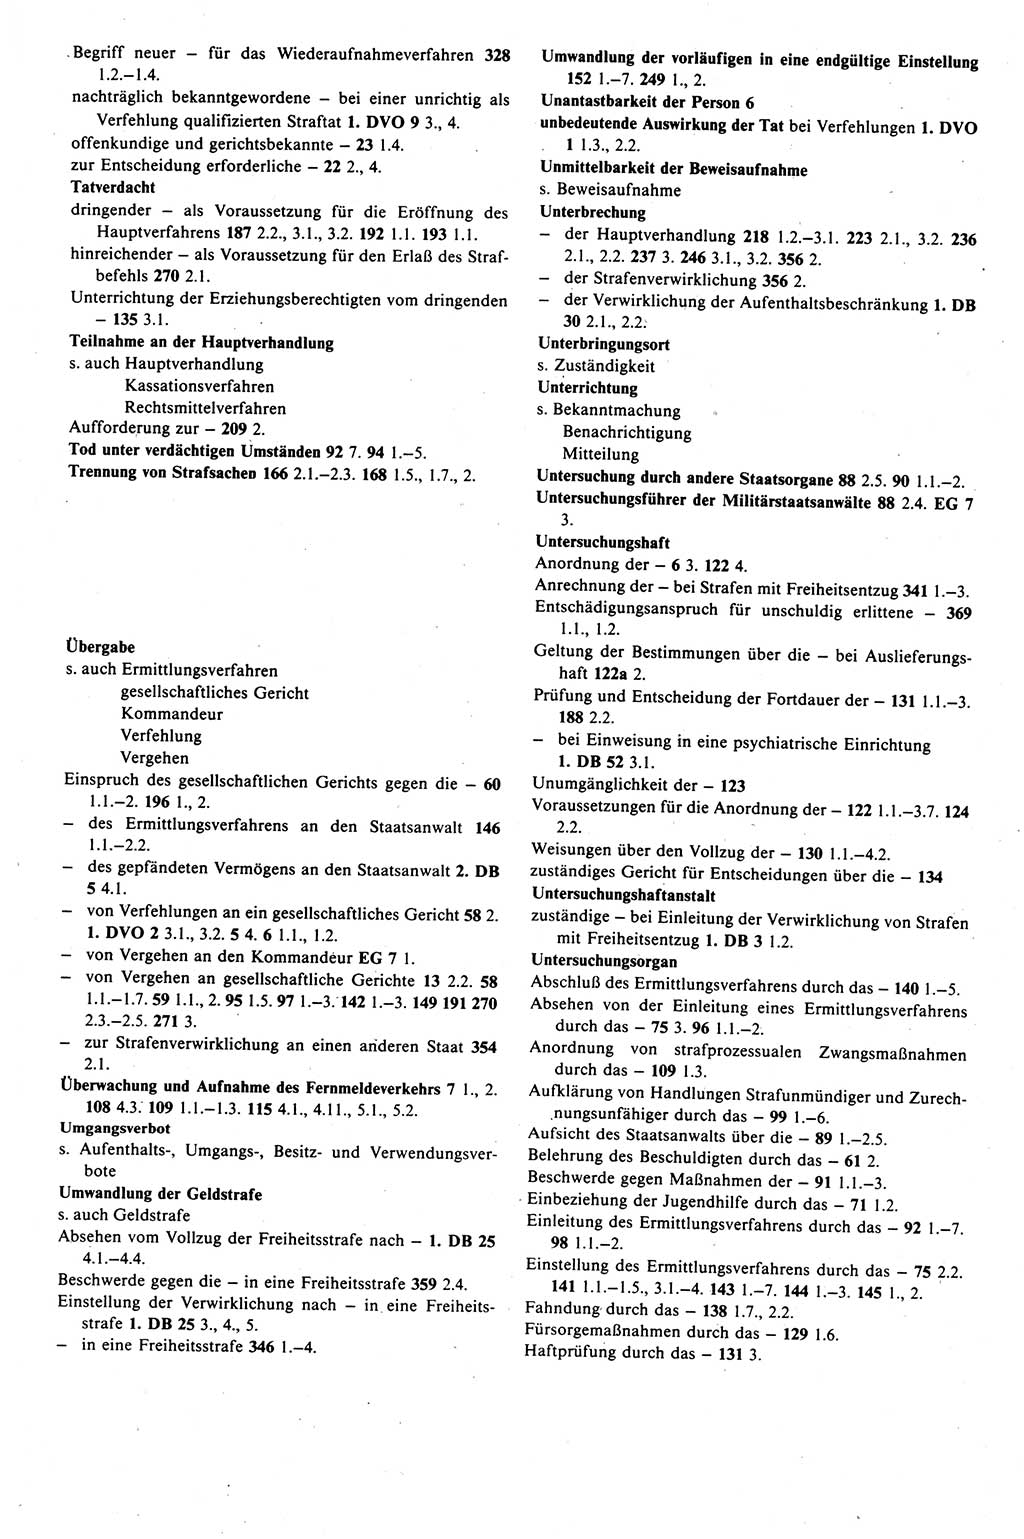 Strafprozeßrecht der DDR (Deutsche Demokratische Republik), Kommentar zur Strafprozeßordnung (StPO) 1989, Seite 537 (Strafprozeßr. DDR Komm. StPO 1989, S. 537)